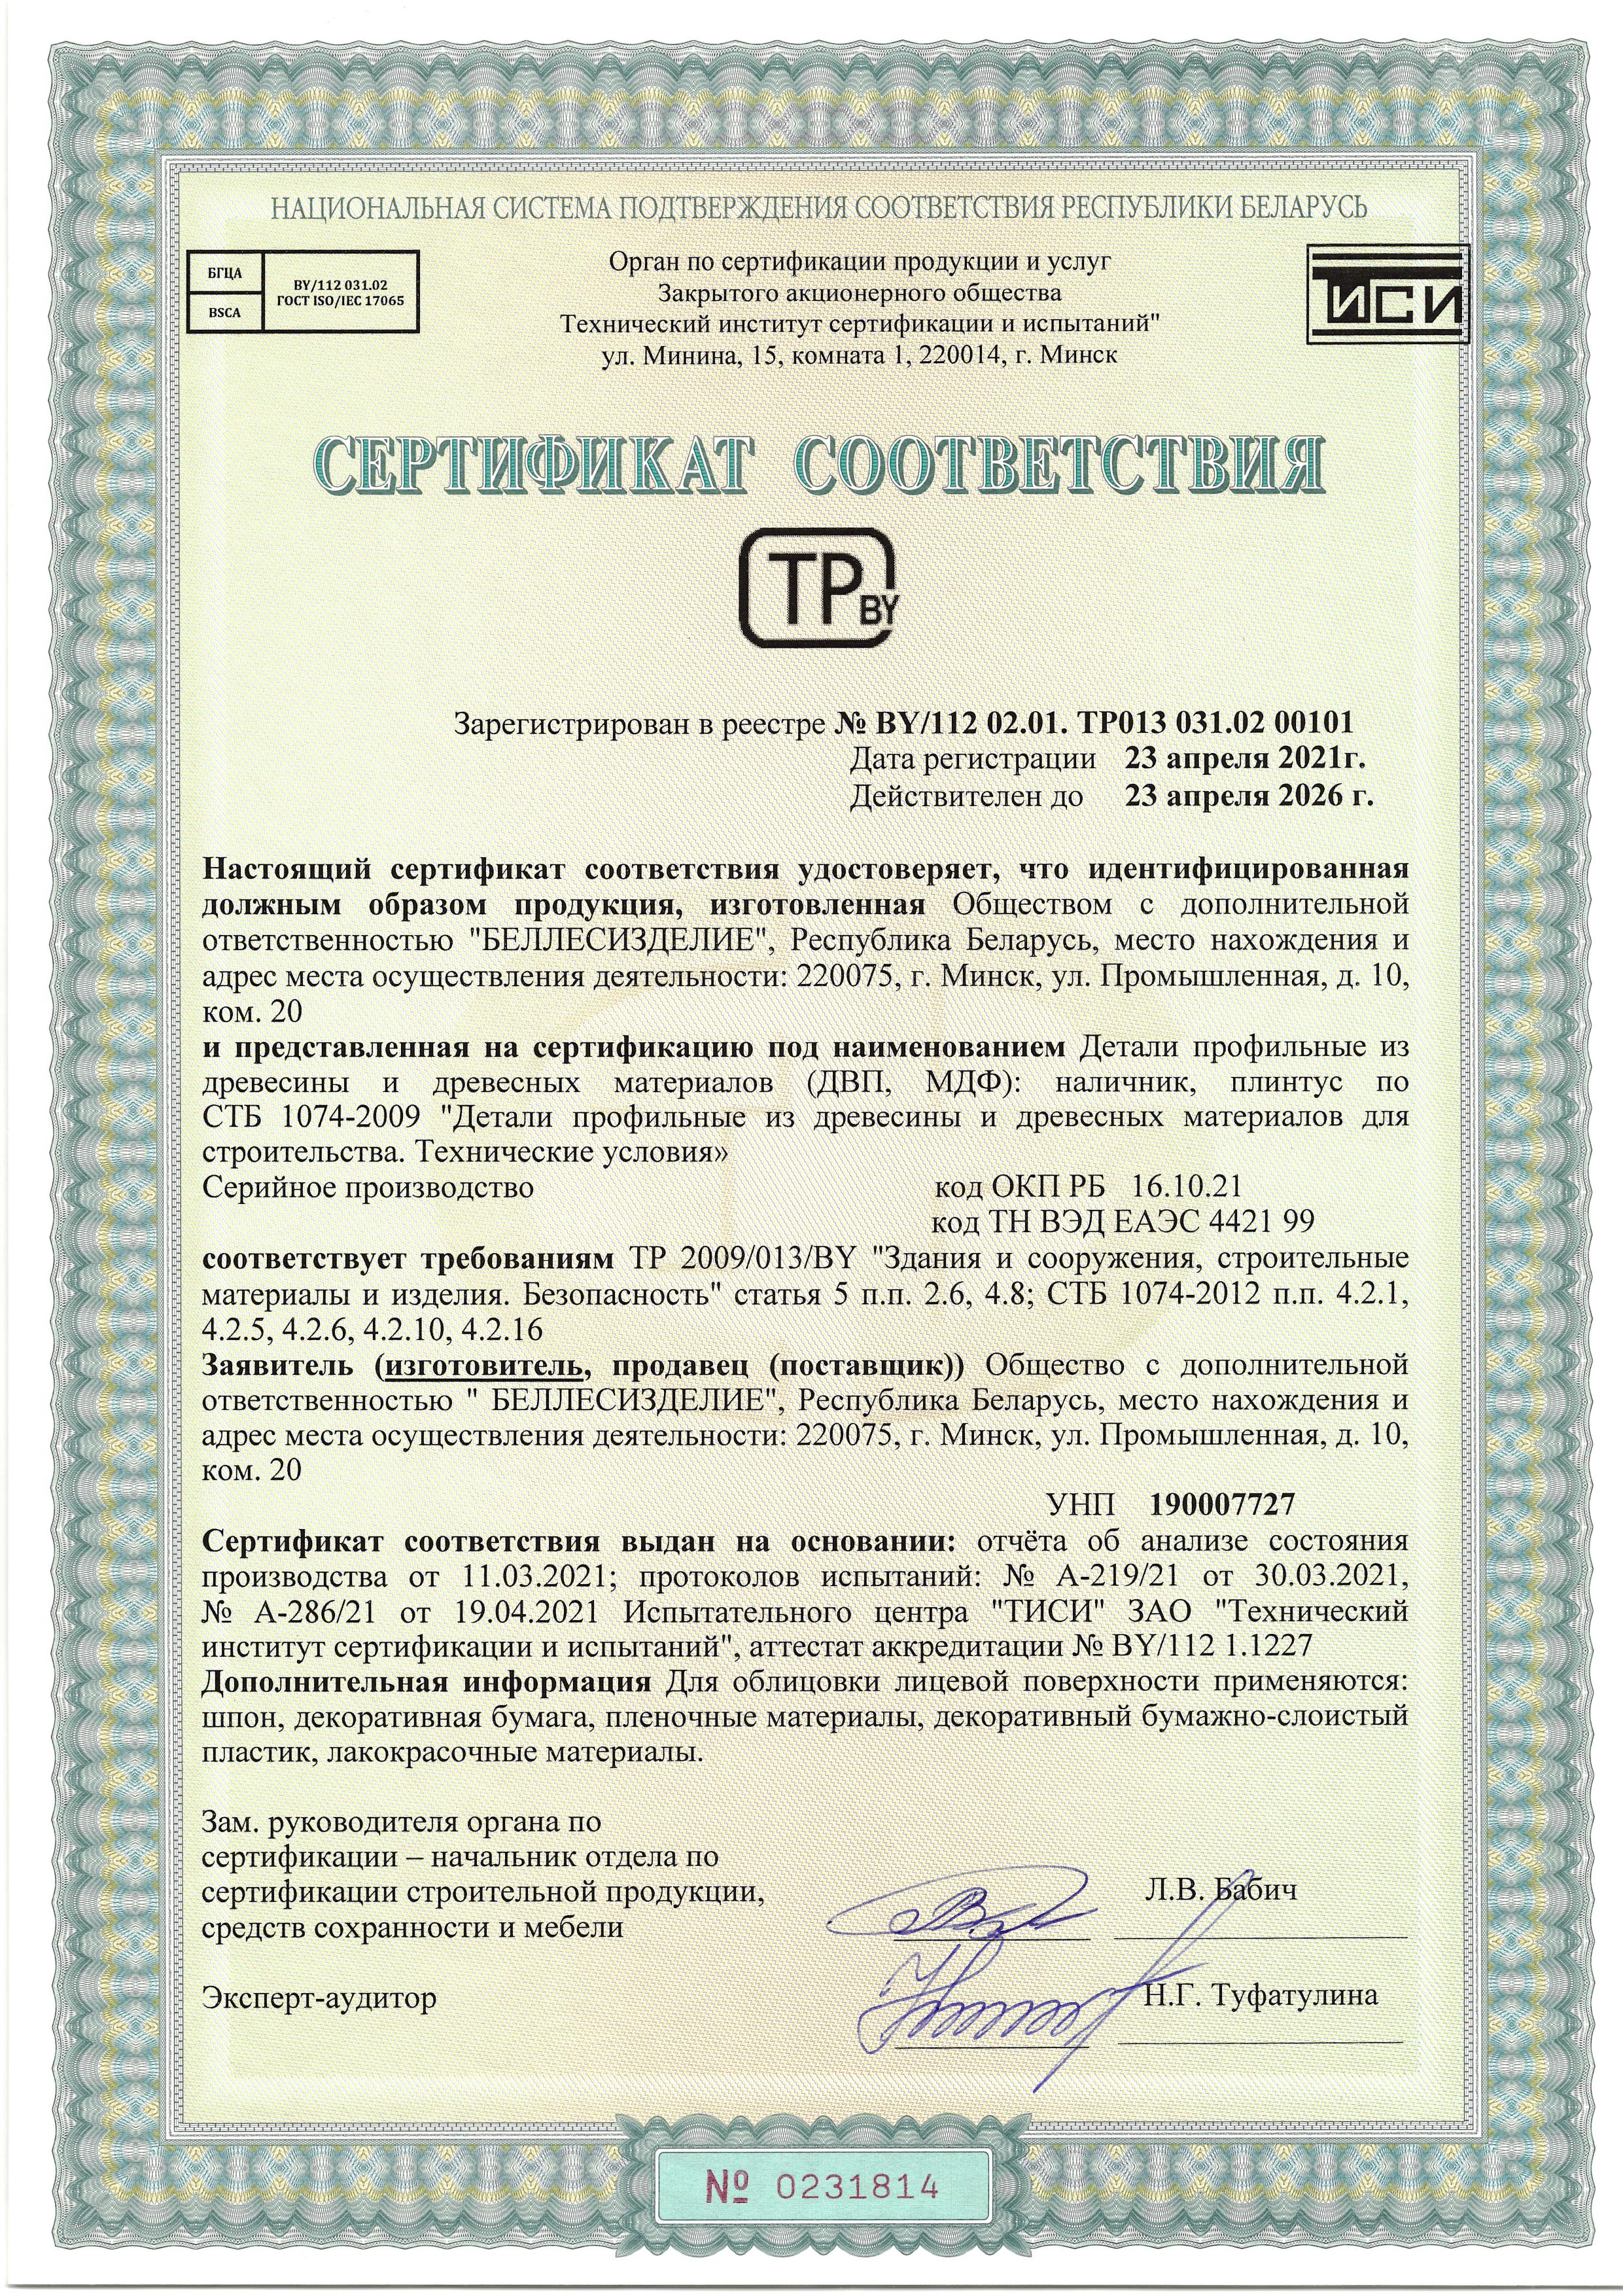 сертификат соответствия на шпон